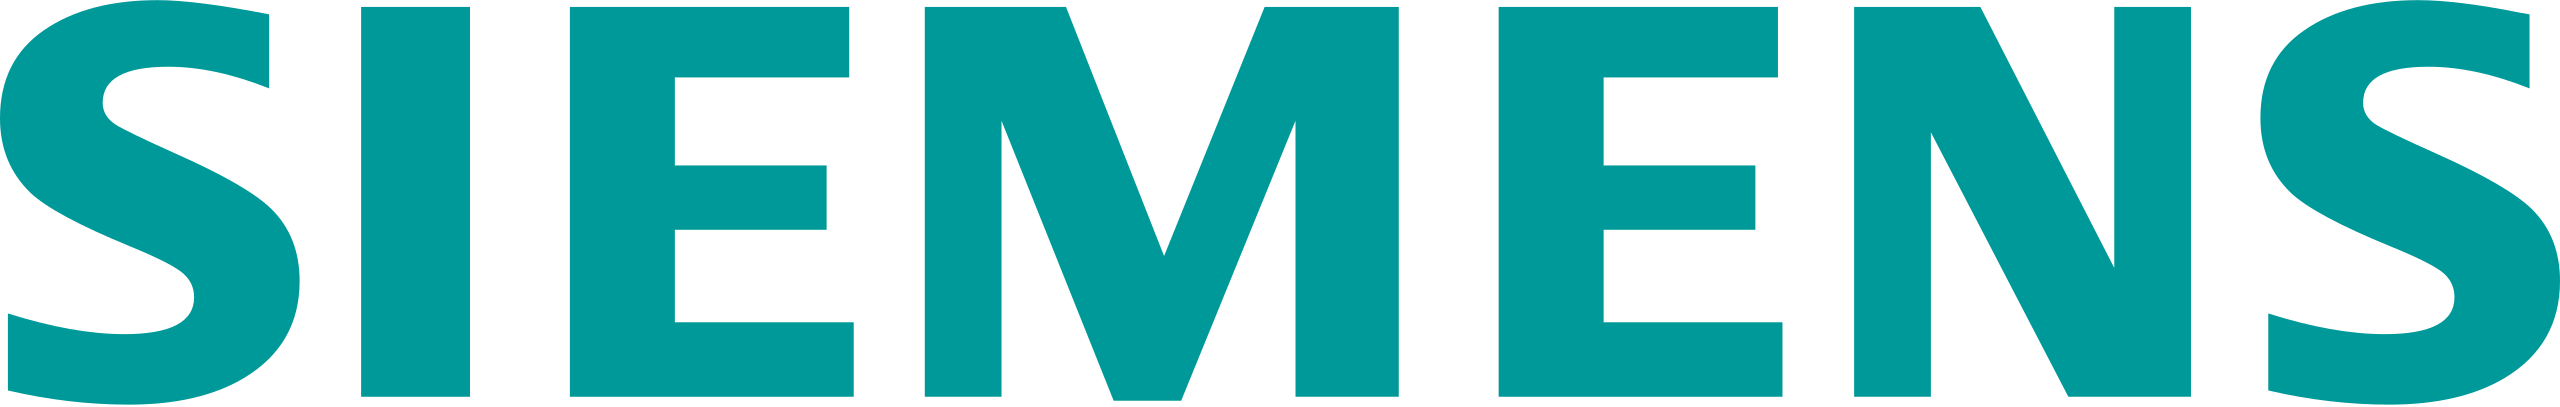 Siemens Banner Logo